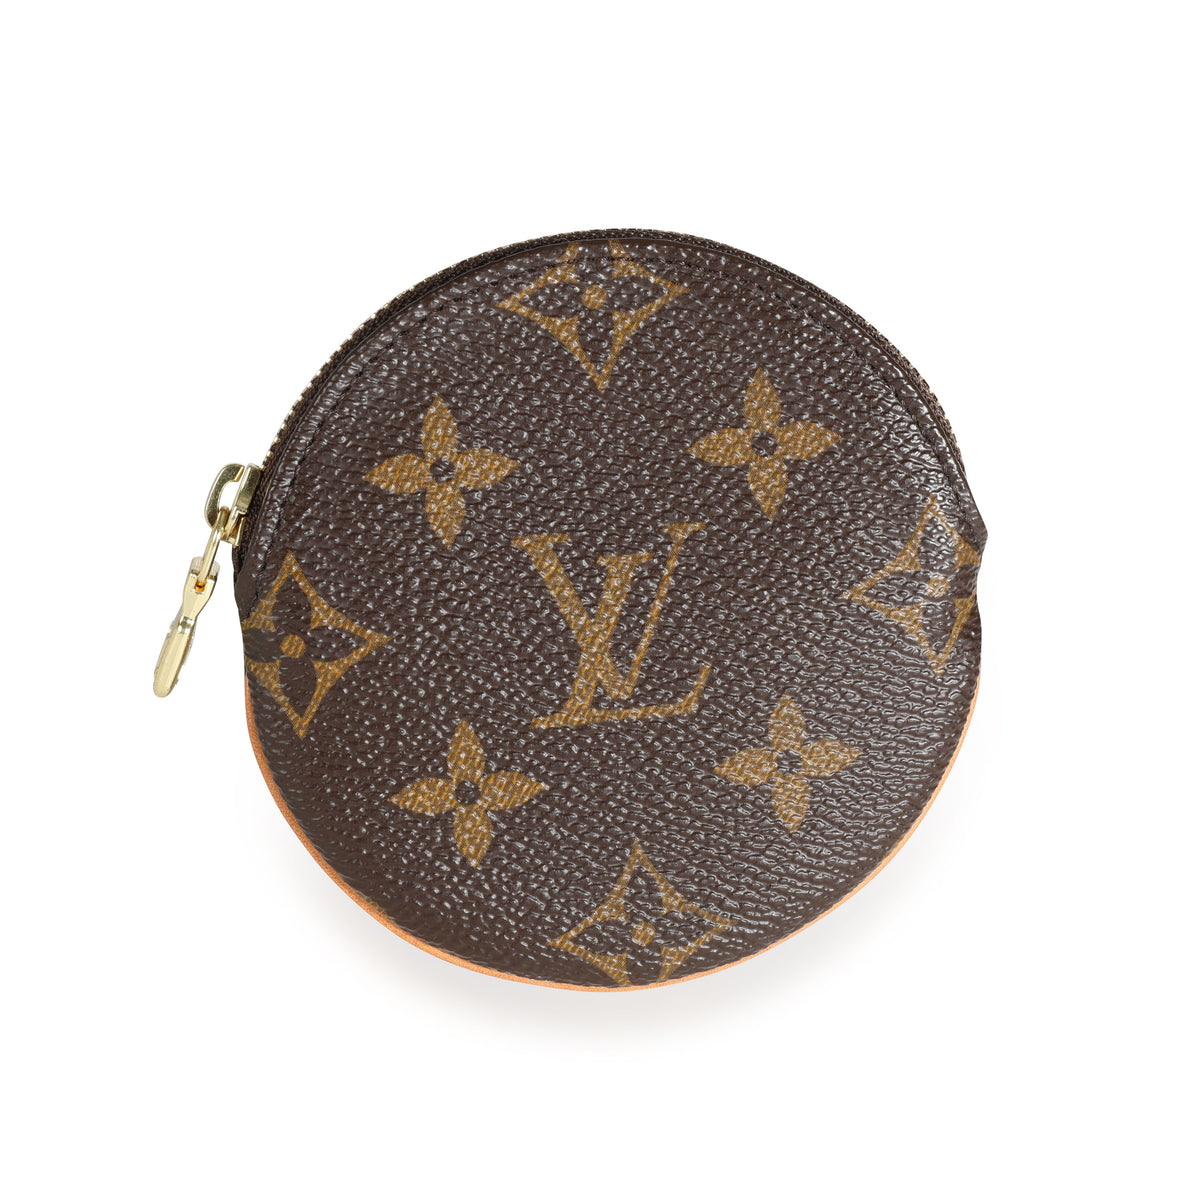 Louis Vuitton Venice Coin Case - Vintage Lux